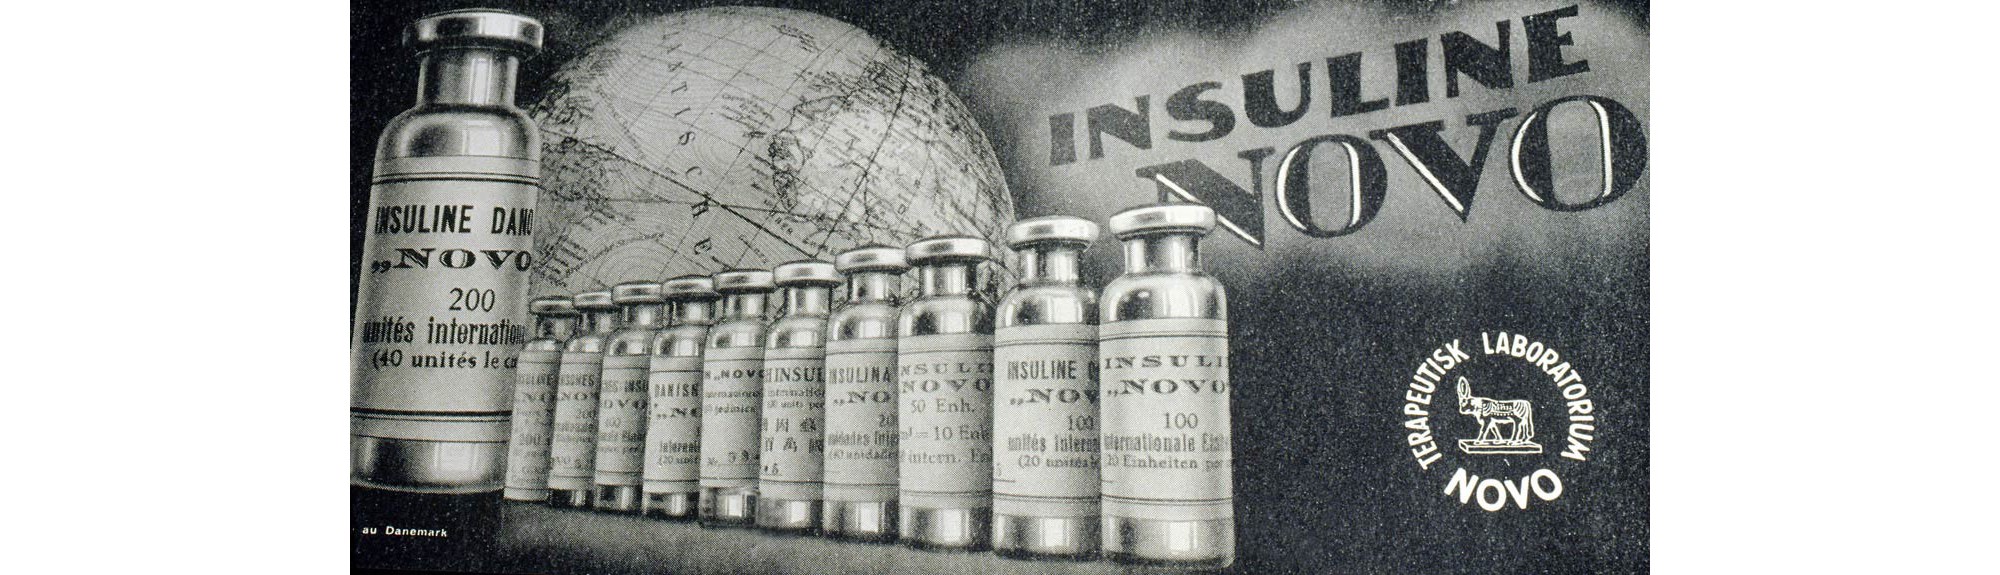 Insulin Novo reklame i 1930.